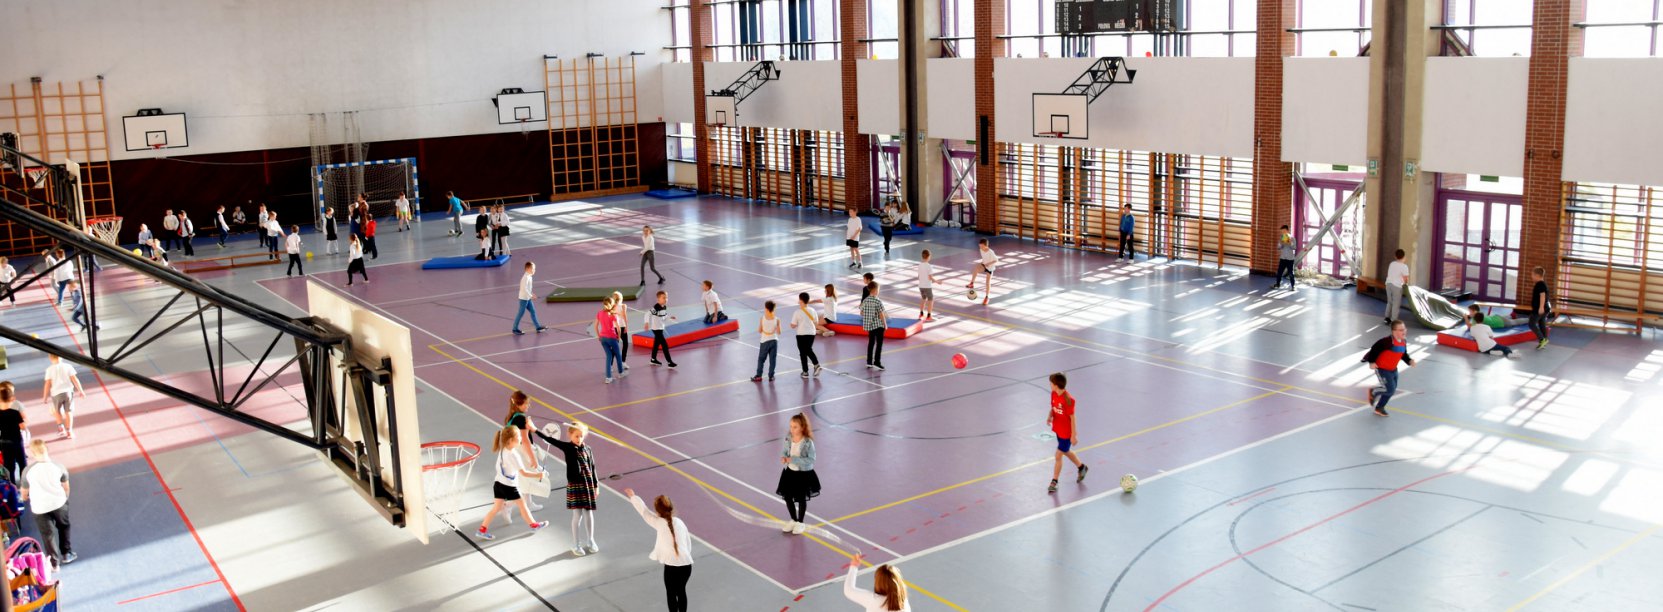 Sala gimnastyczna i ćwiczące dzieci - widok z góry